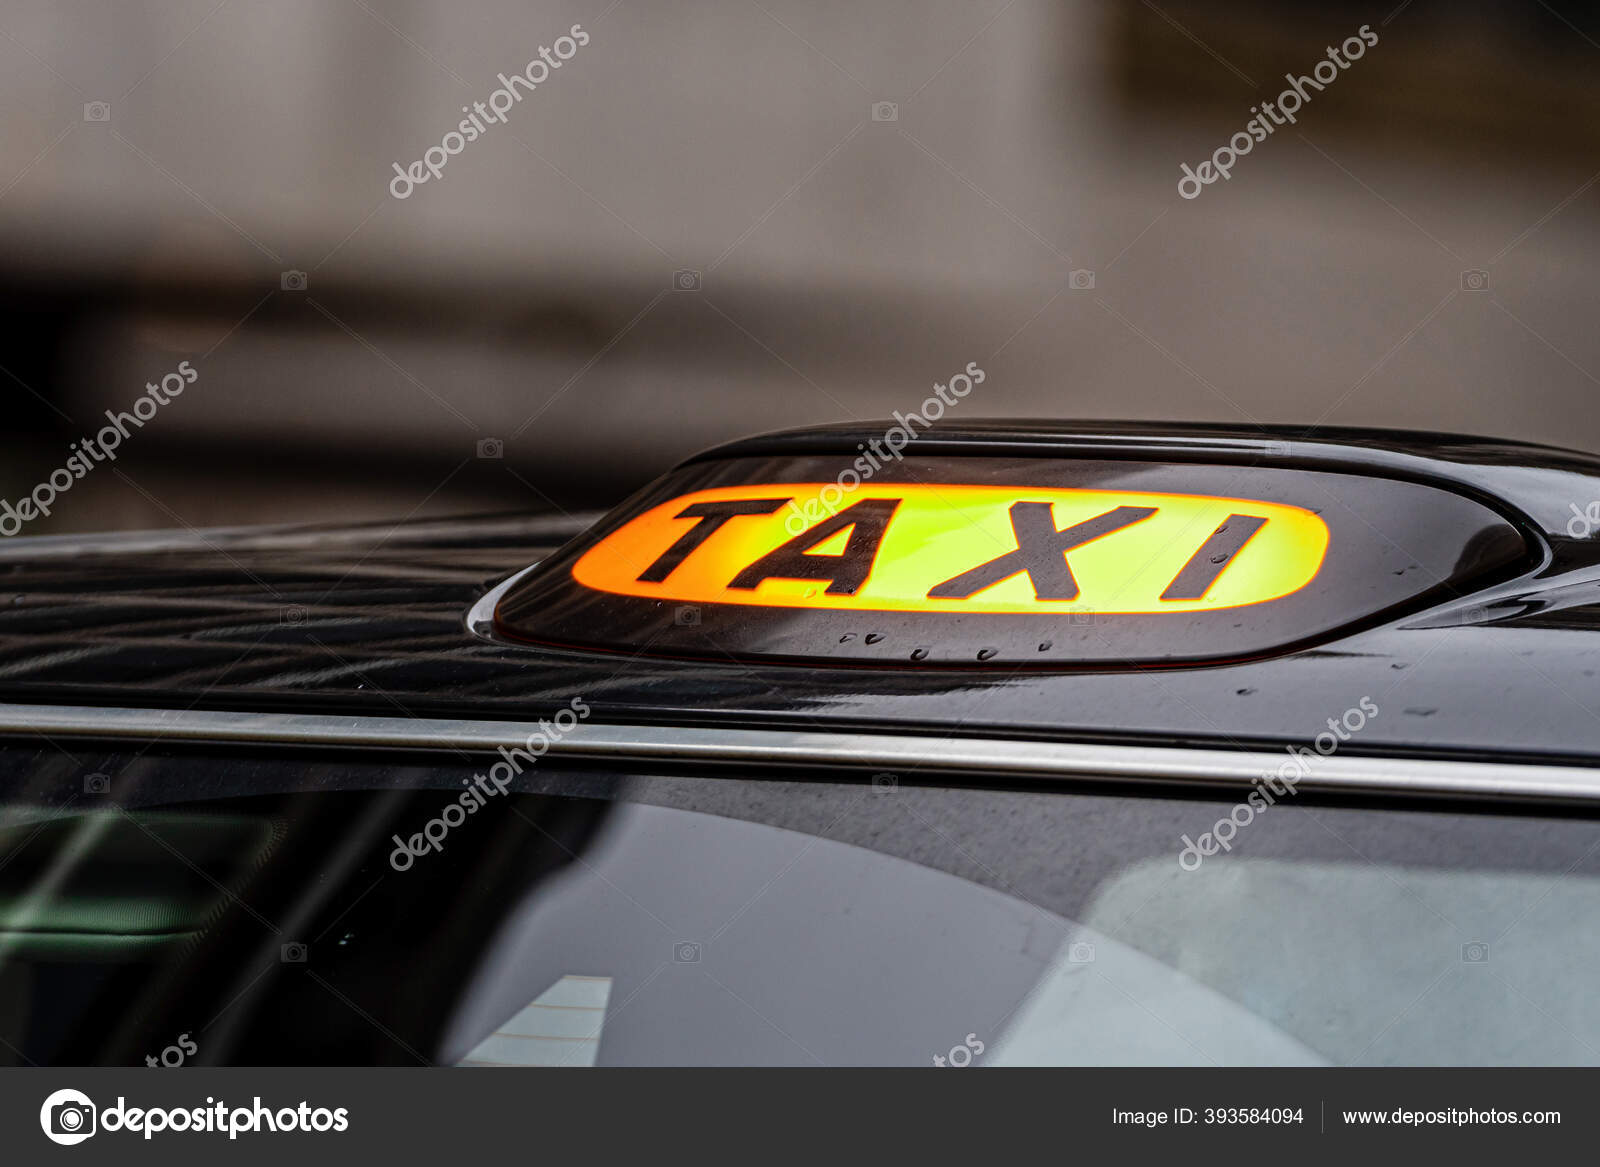 Taxi Schild Stock Photo